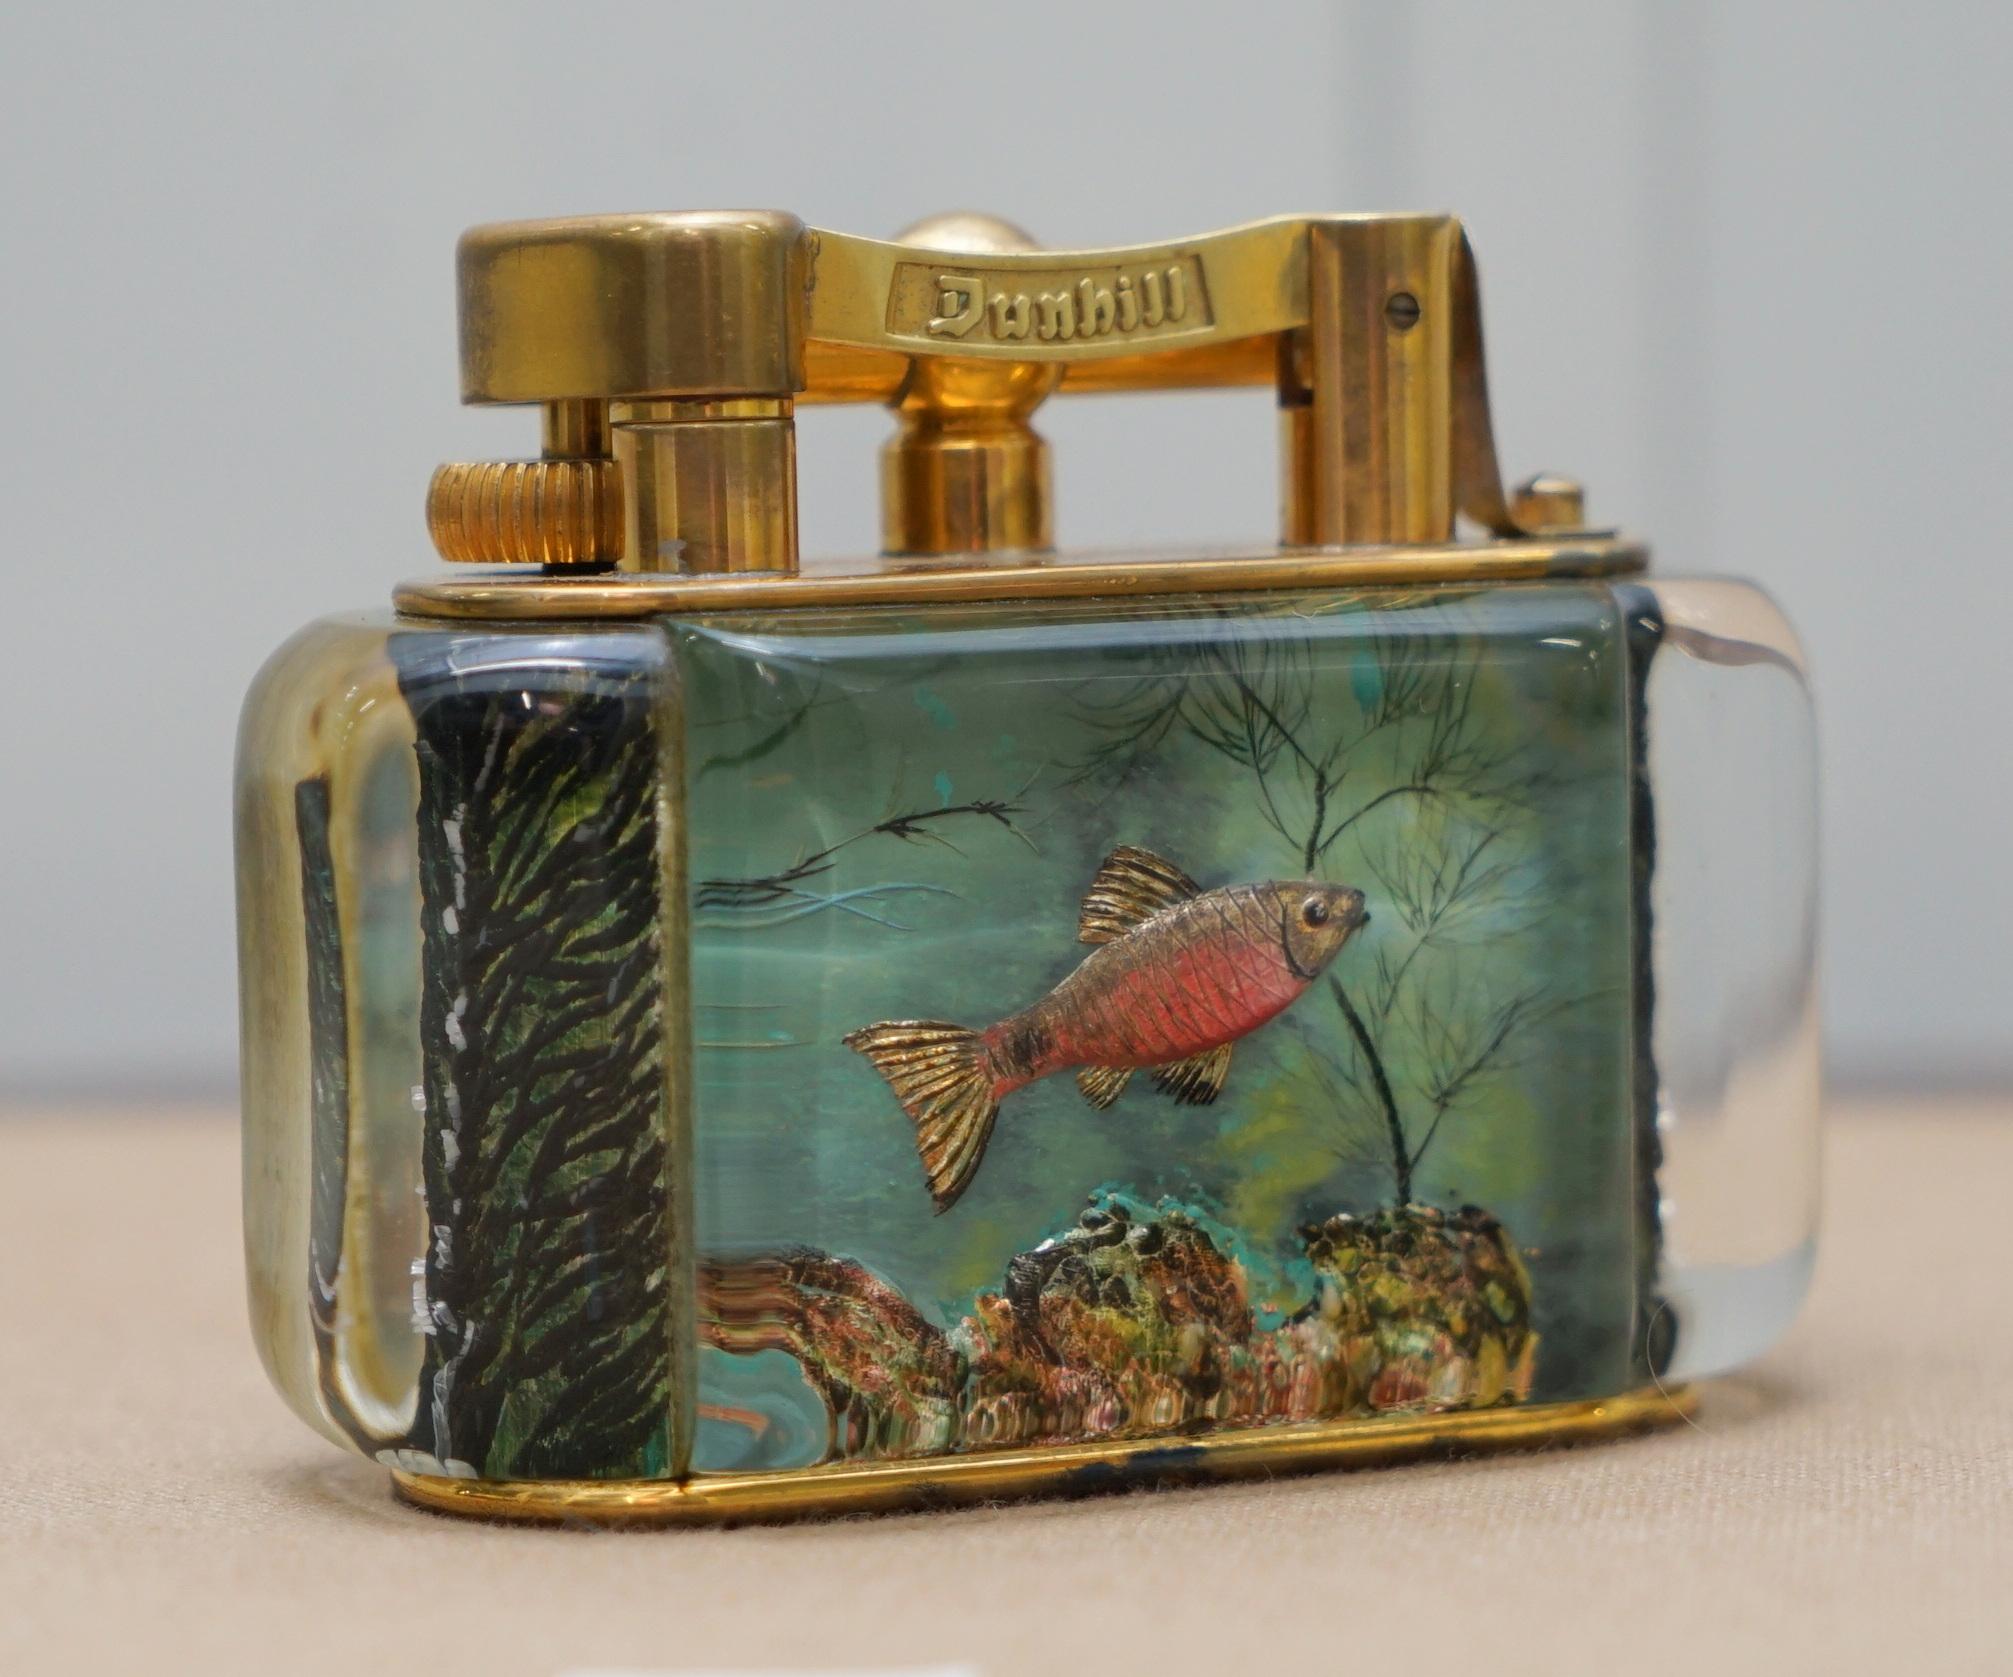 Wir freuen uns, dieses sehr seltene, in England handgefertigte, übergroße Dunhill Aquarium Tischfeuerzeug aus den 1950er Jahren mit vergoldetem Metallwerk, wie es von Winston Churchill benutzt wurde, zum Verkauf anzubieten. 

Sie sind alle